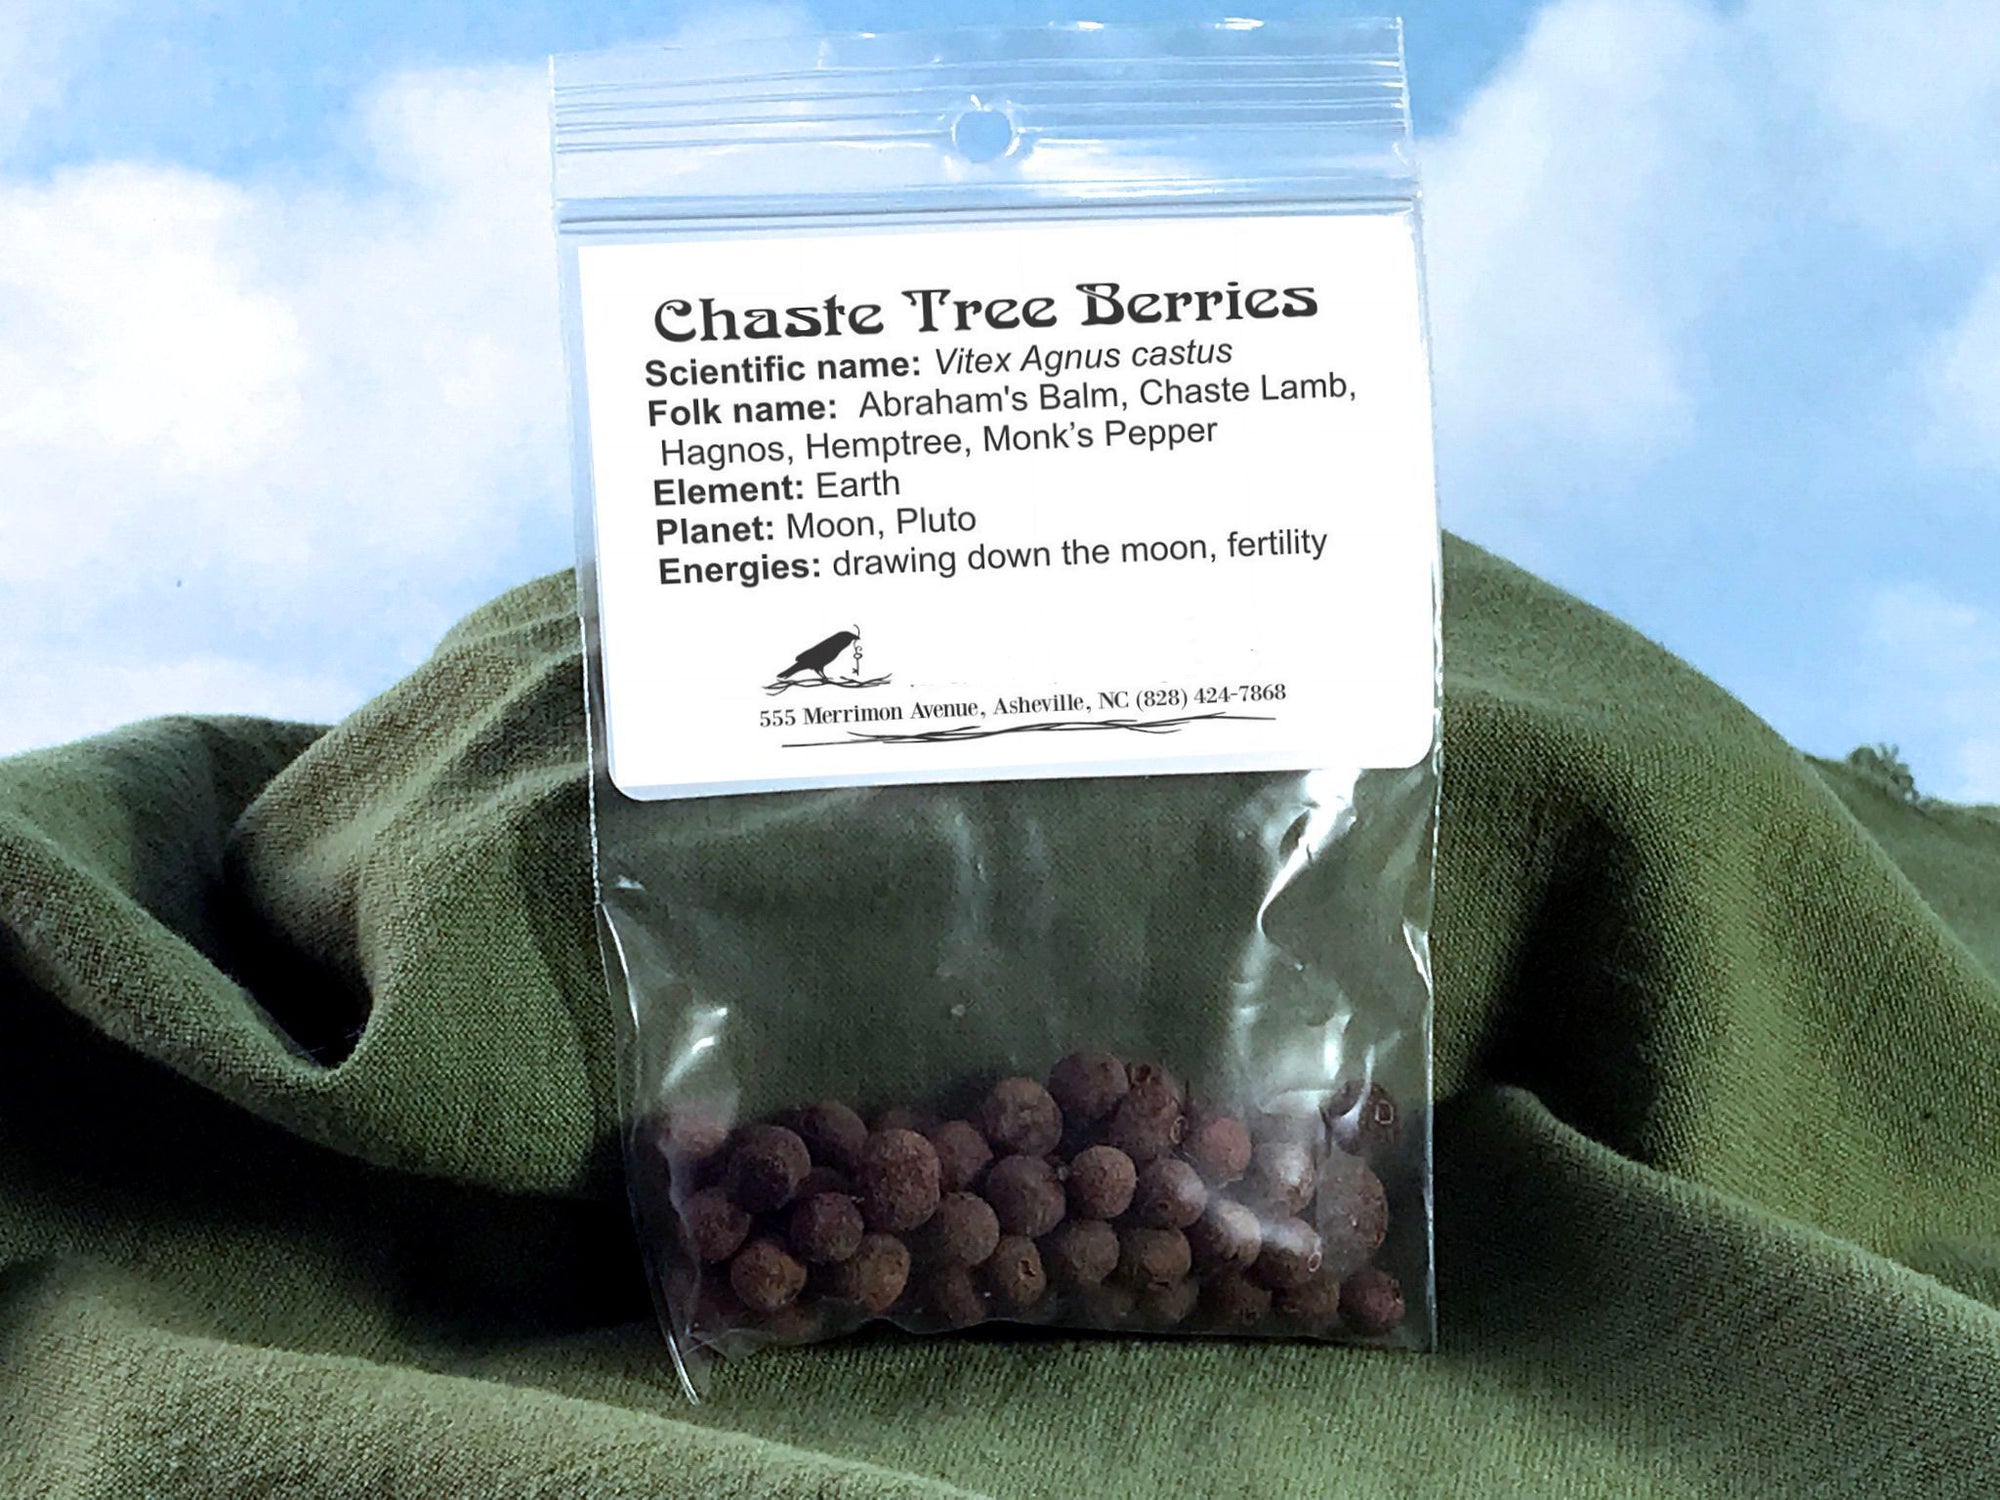 Chaste Tree Berries